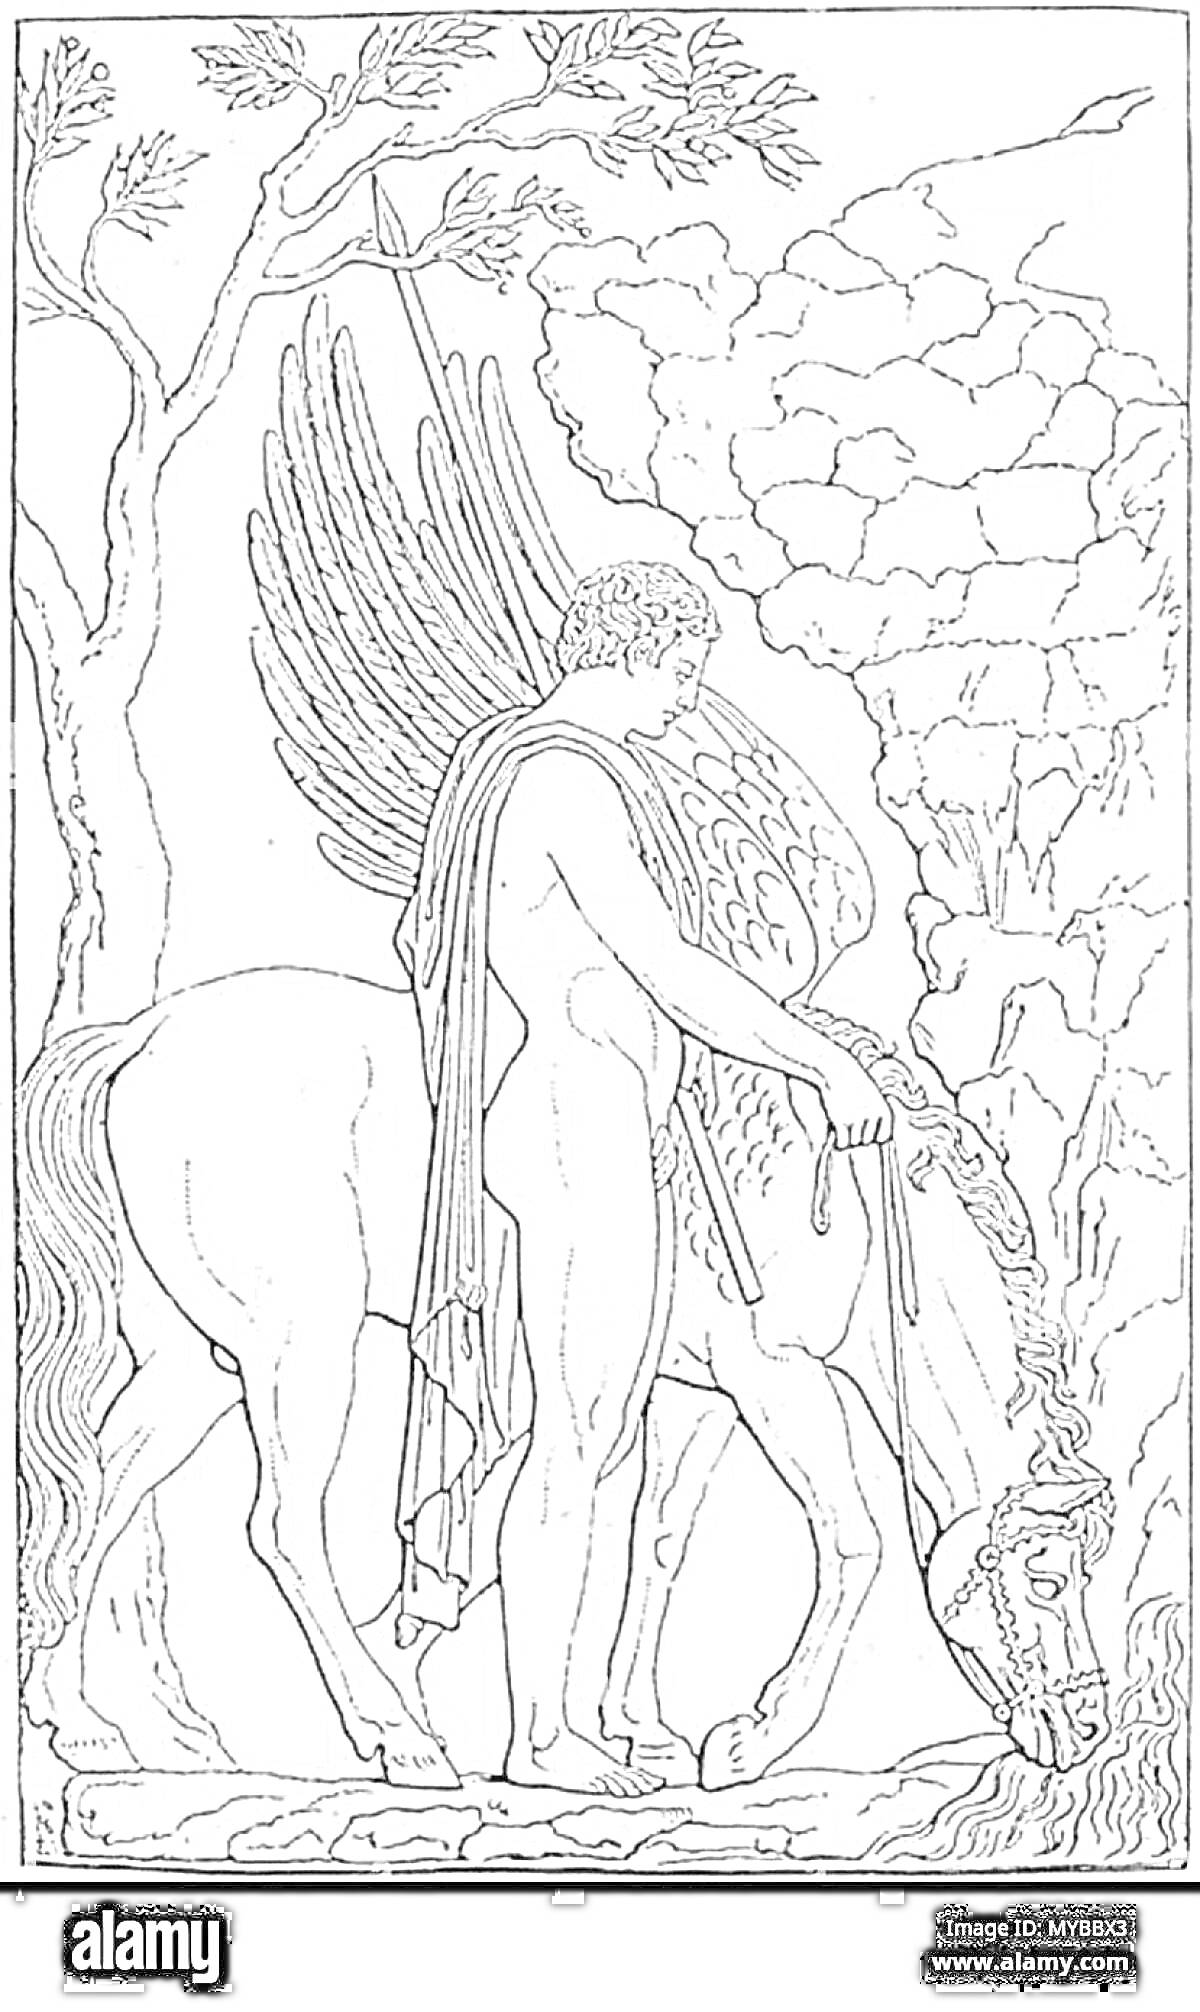 На раскраске изображено: Древняя Греция, Пегас, Крылья, Человек, Лошадь, Природа, Деревья, Скалы, Мифические существа